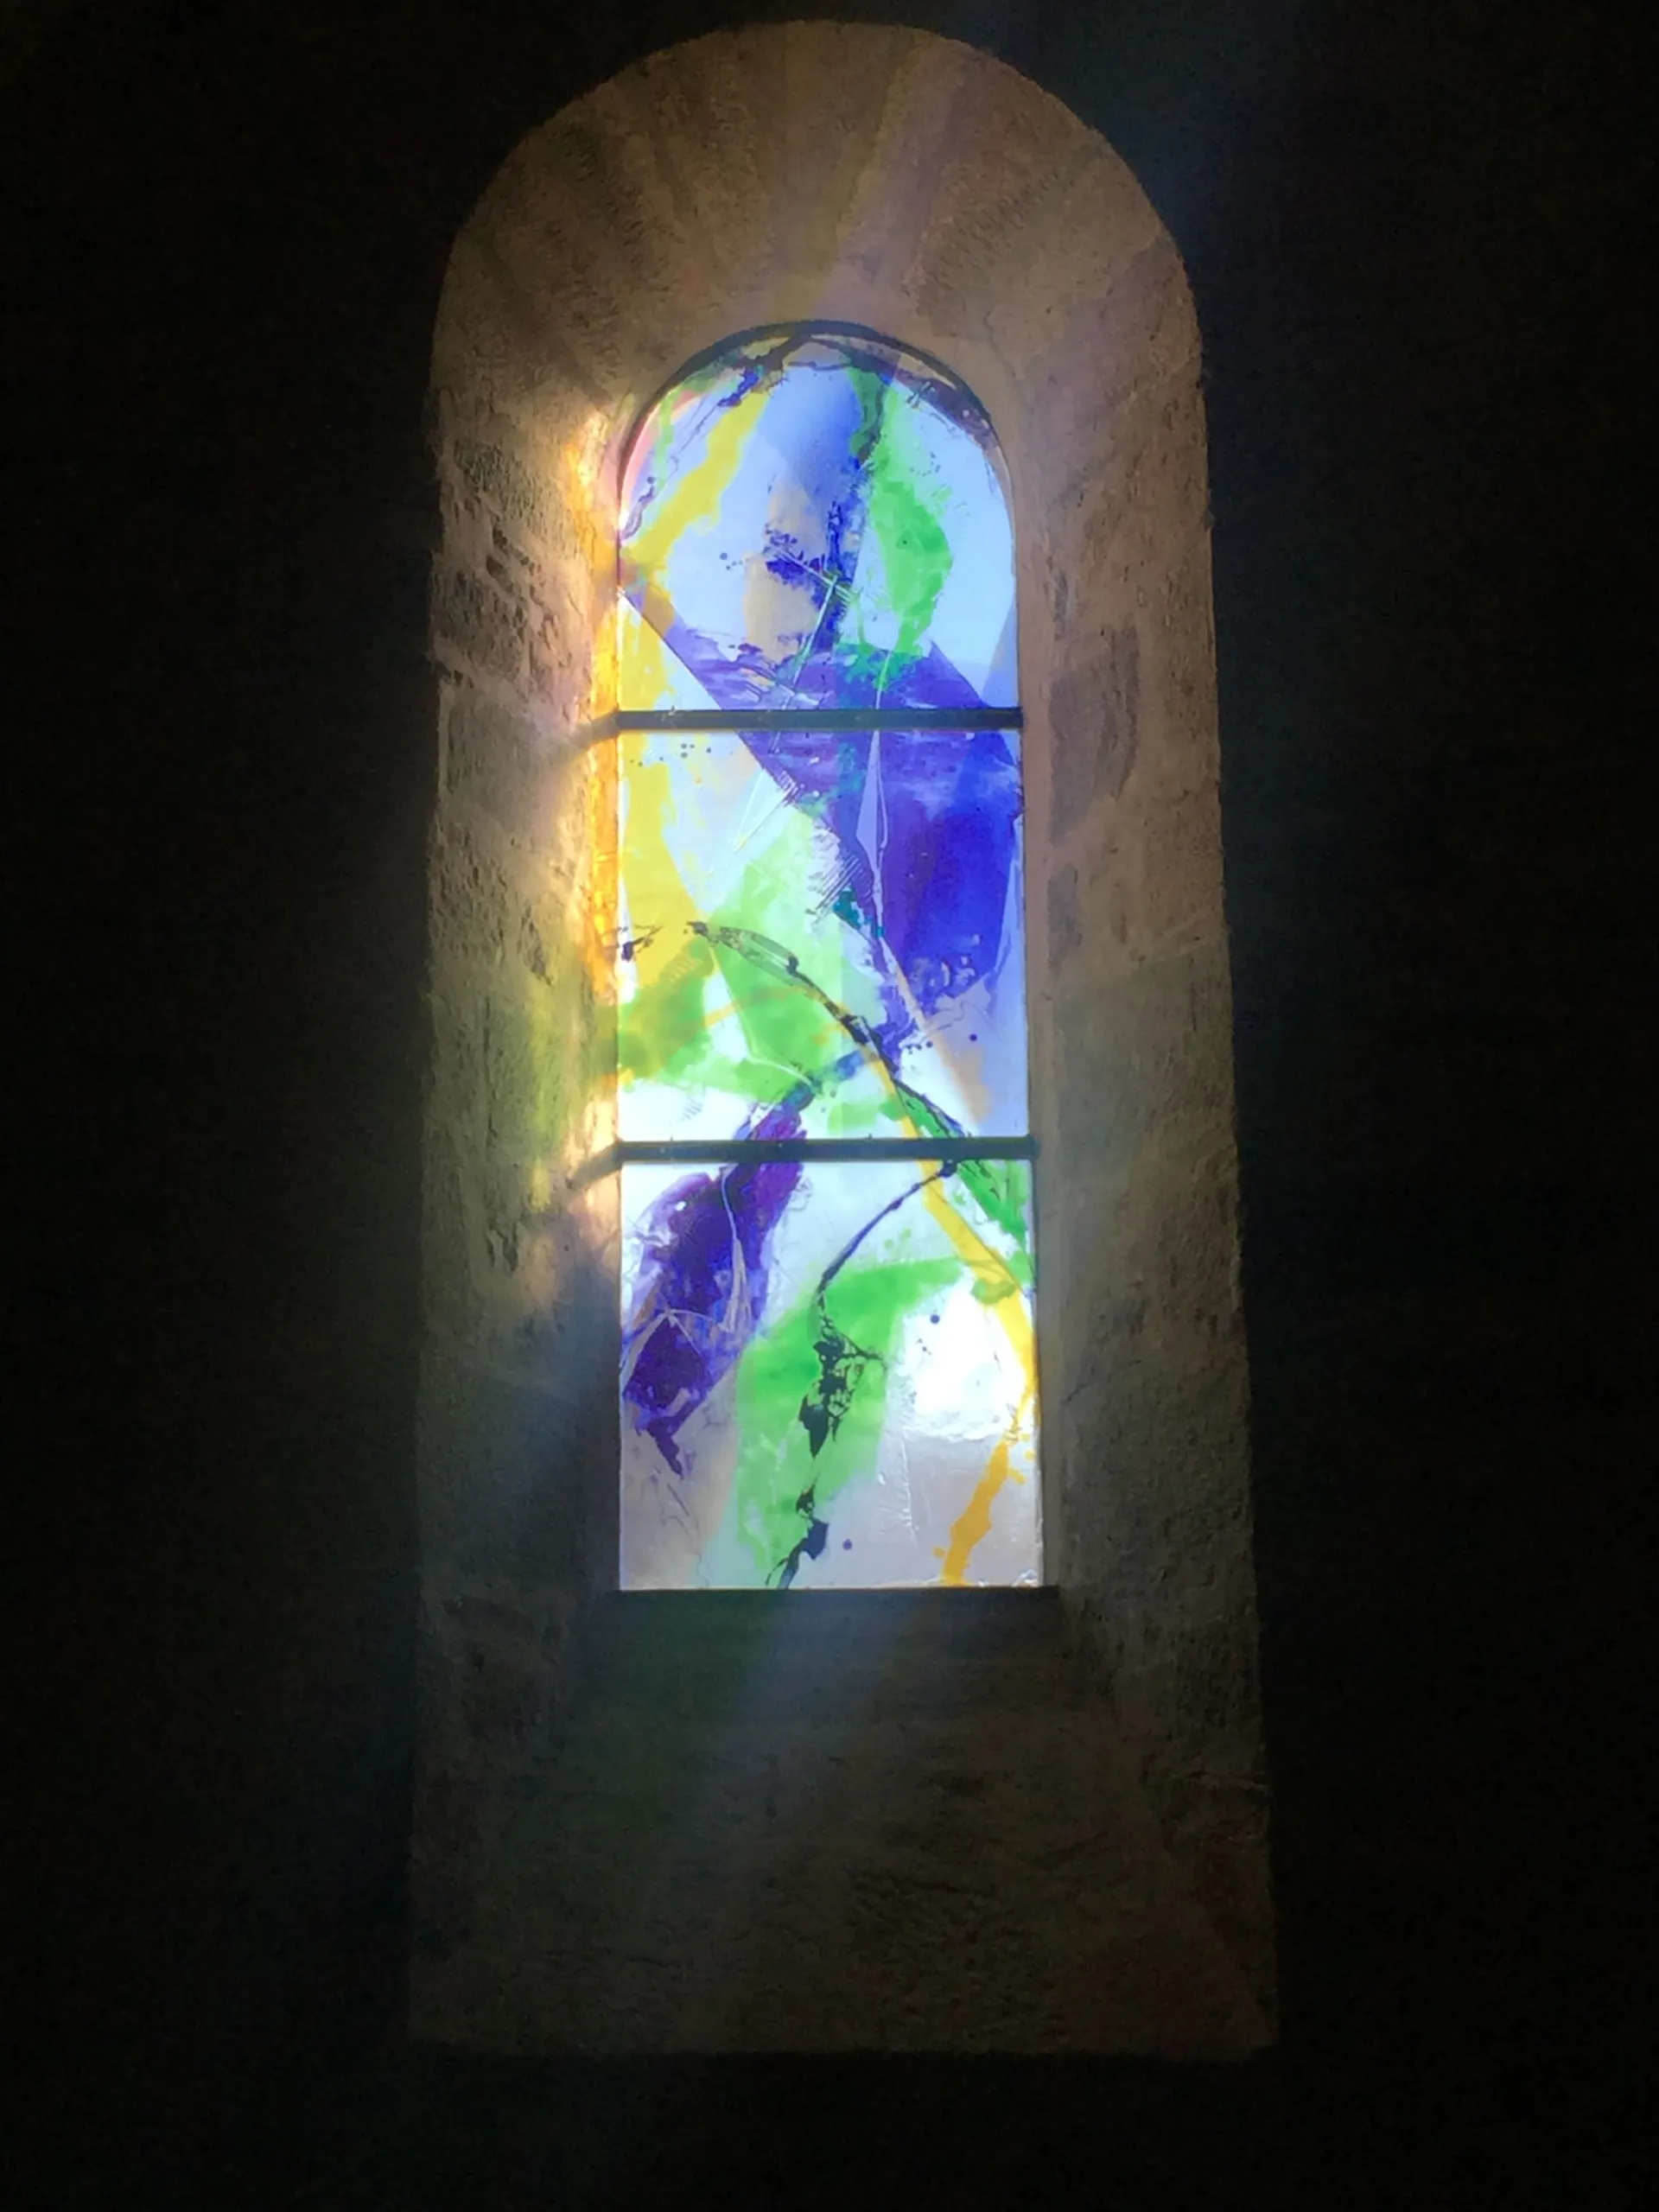 Orgnac sur Vézère: Kirche Saint-Martial: zeitgenössisches Kirchenfenster von Pater Kim En Joong